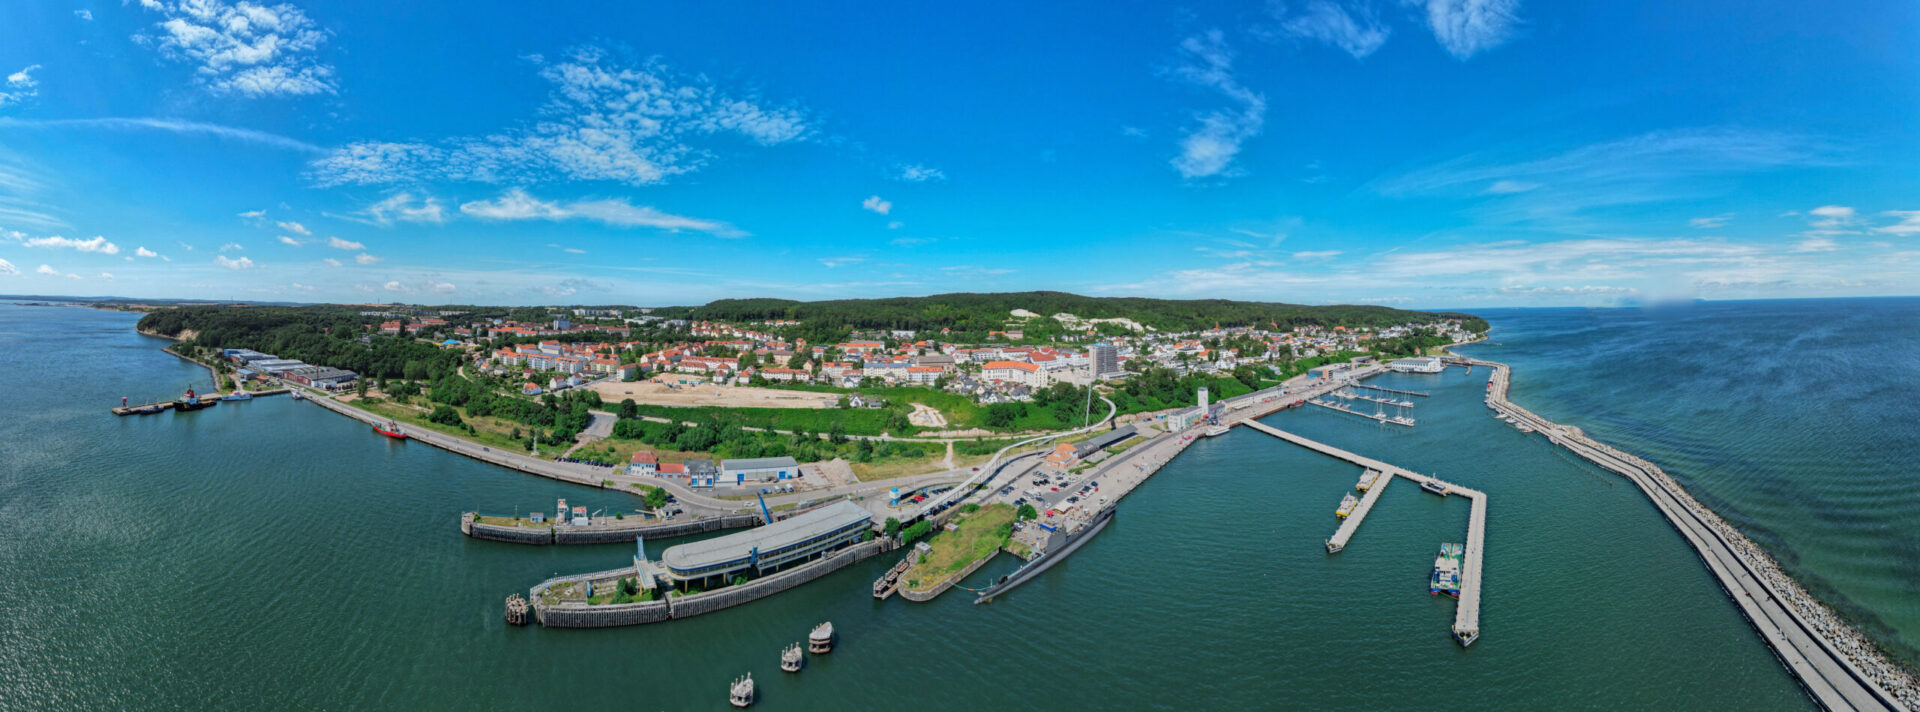 Der Hafen von Sassnitz auf Rügen